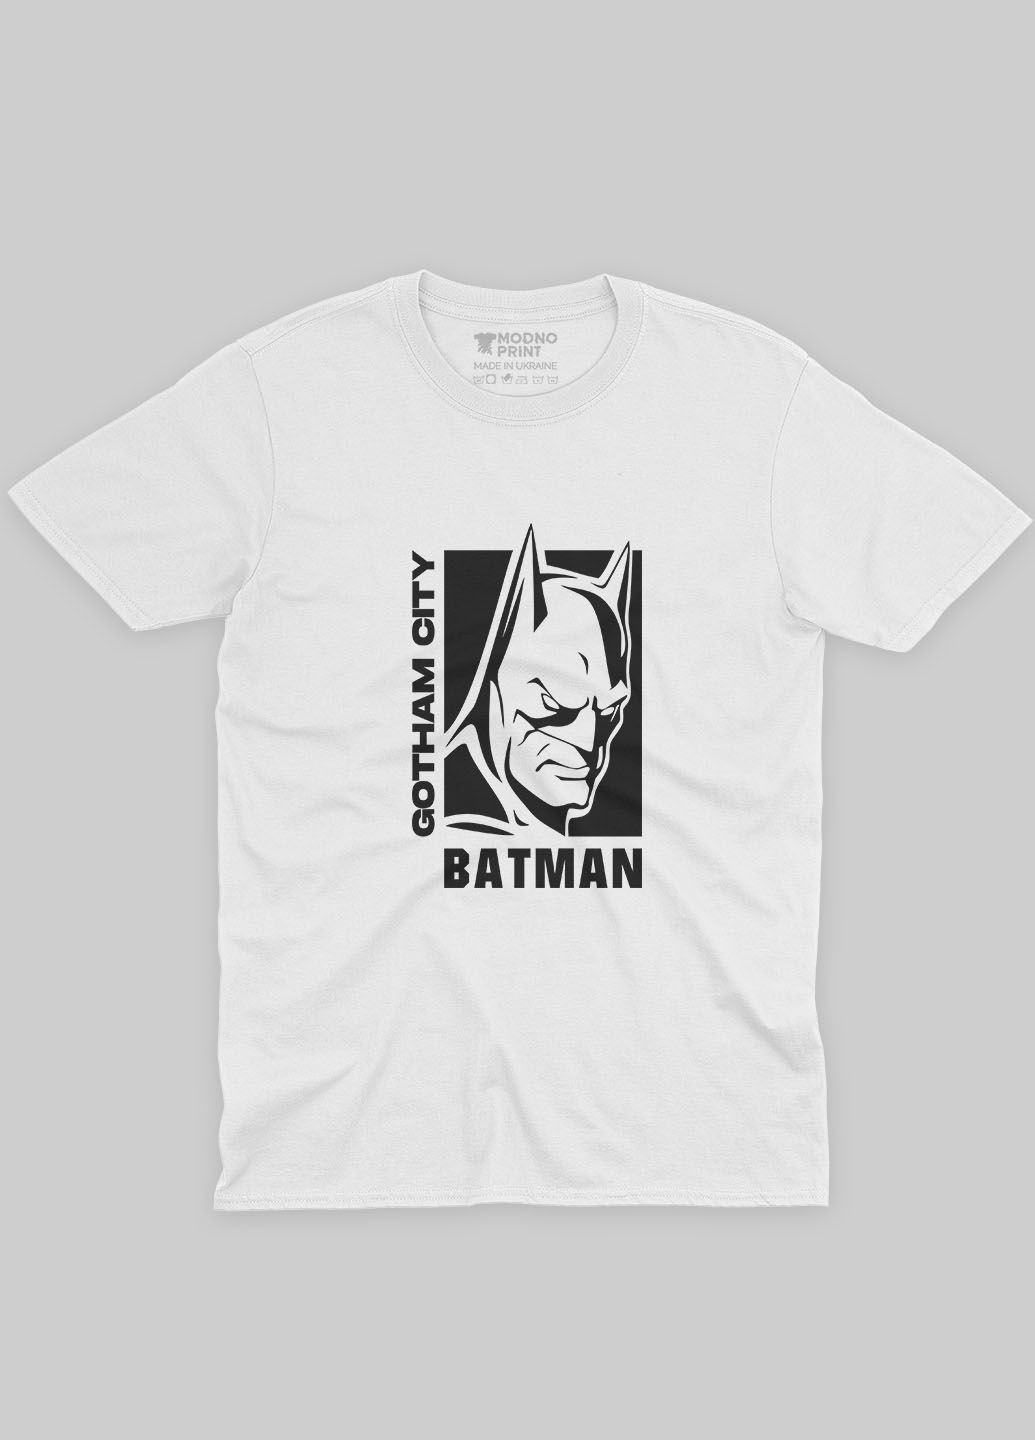 Белая демисезонная футболка для девочки с принтом супергероя - бэтмен (ts001-1-whi-006-003-008-g) Modno